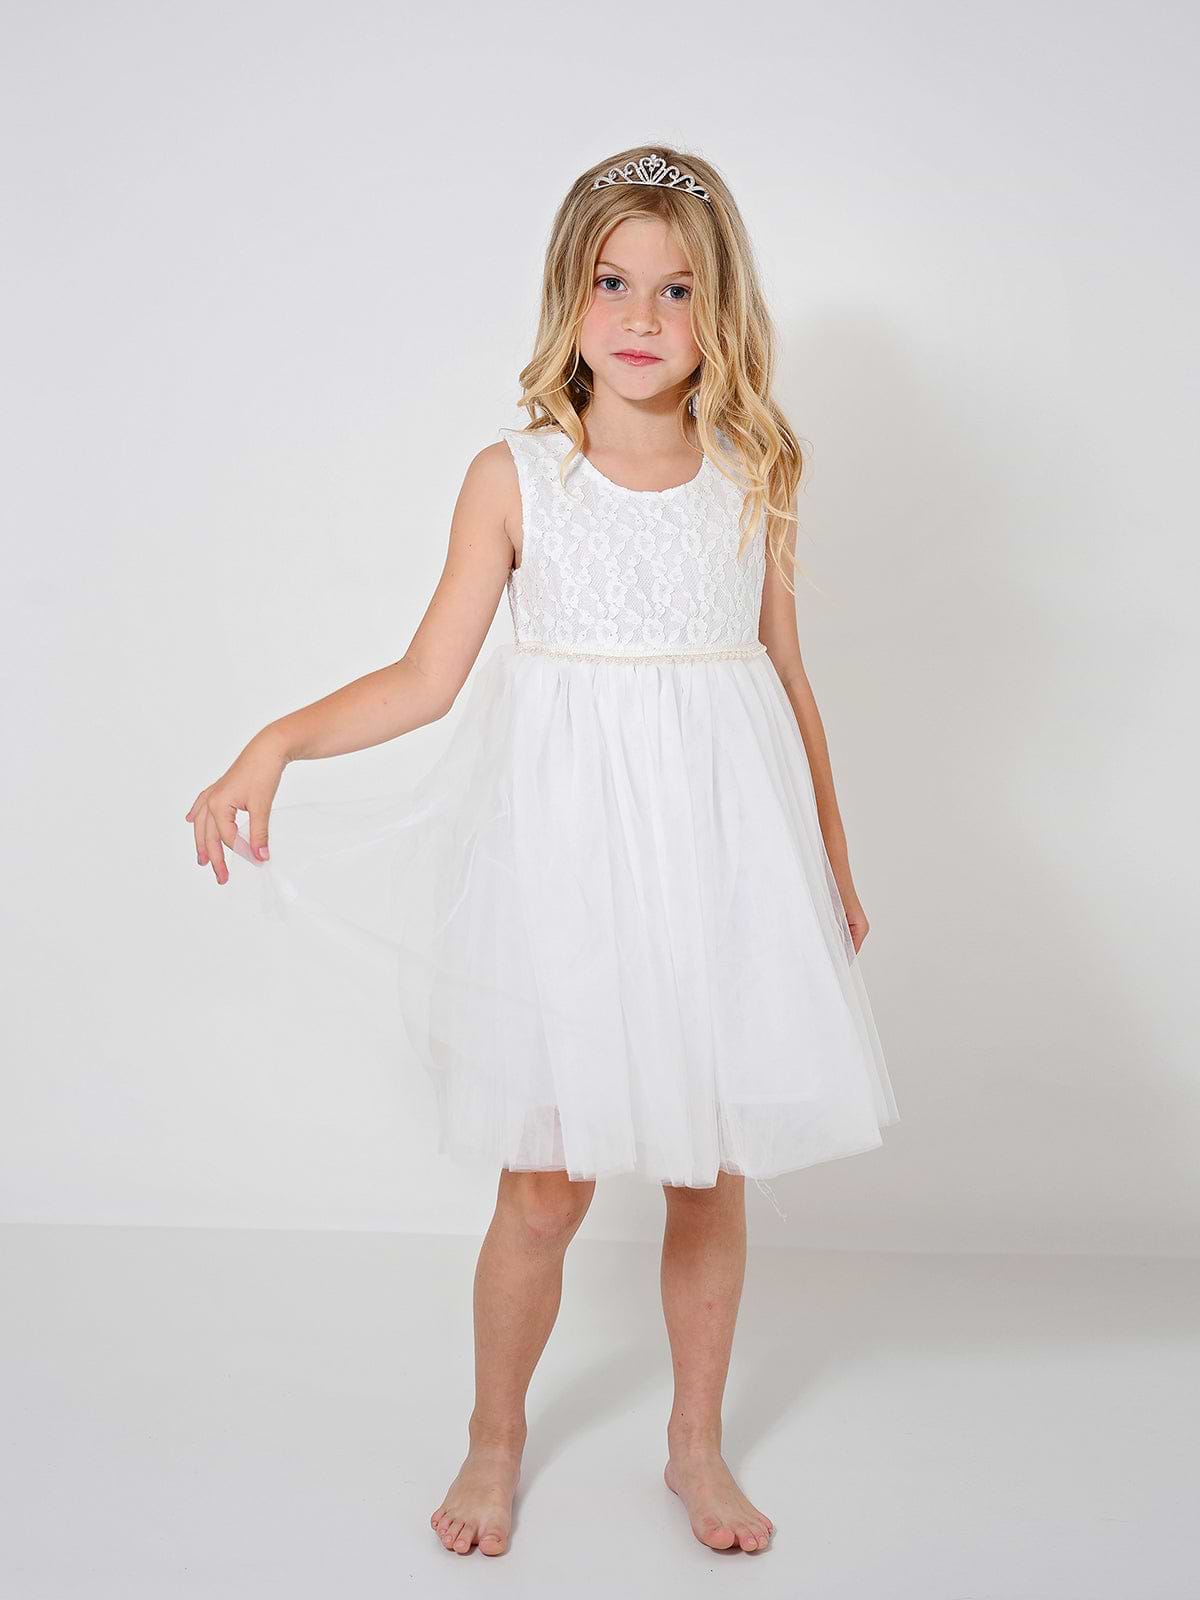 שמלת שושבינה סופי לבנה / ילדות ותינוקות